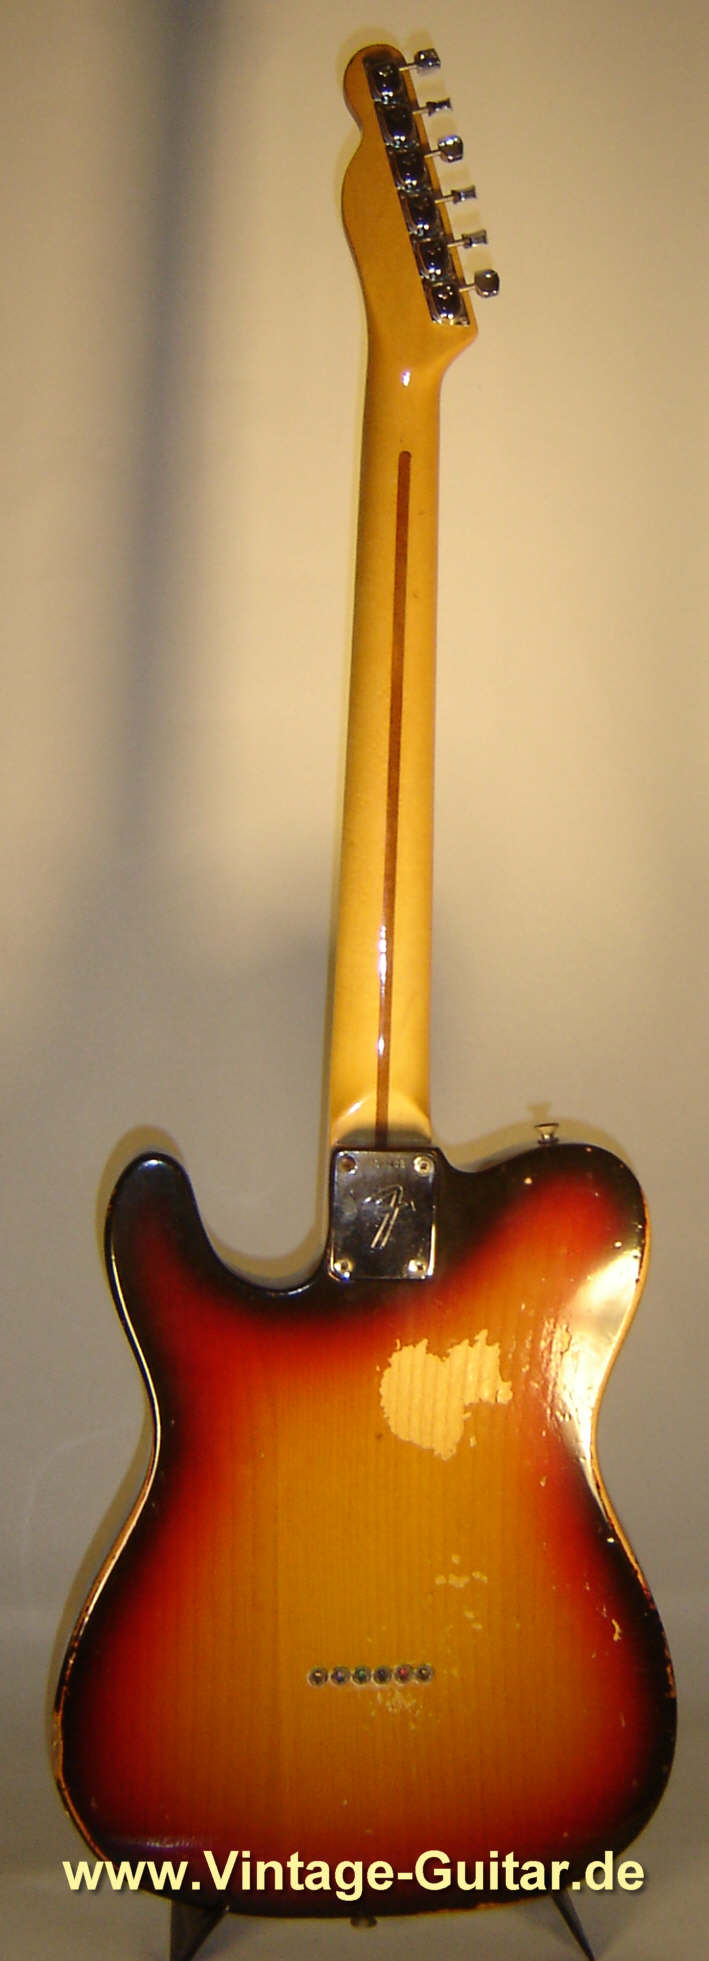 Fender_Telecaster_1973_sunburst_2.jpg